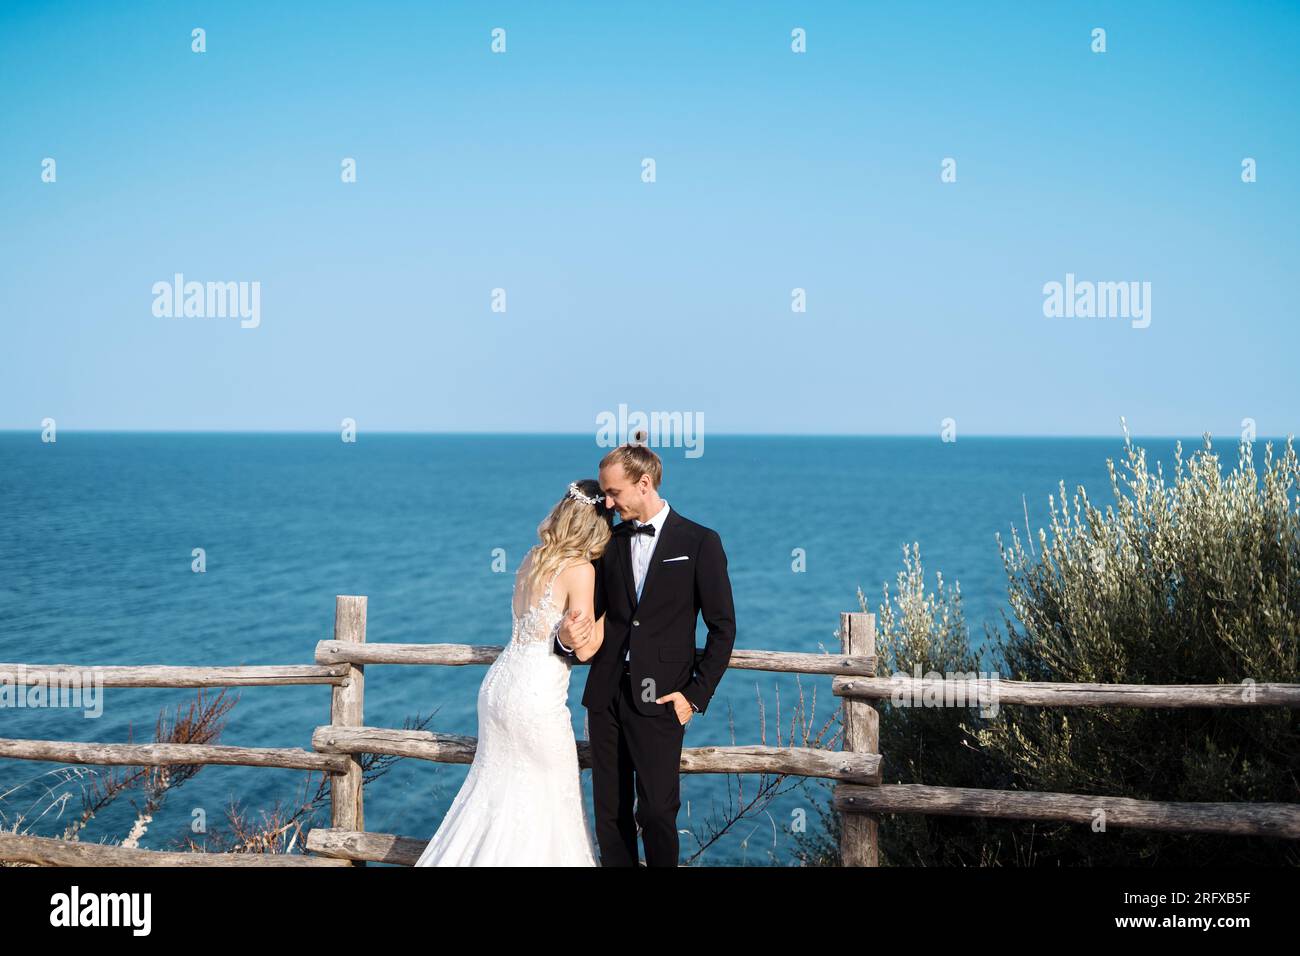 Ein liebevolles Brautpaar genießt die Hochzeit mit Meeresblick Stock Photo